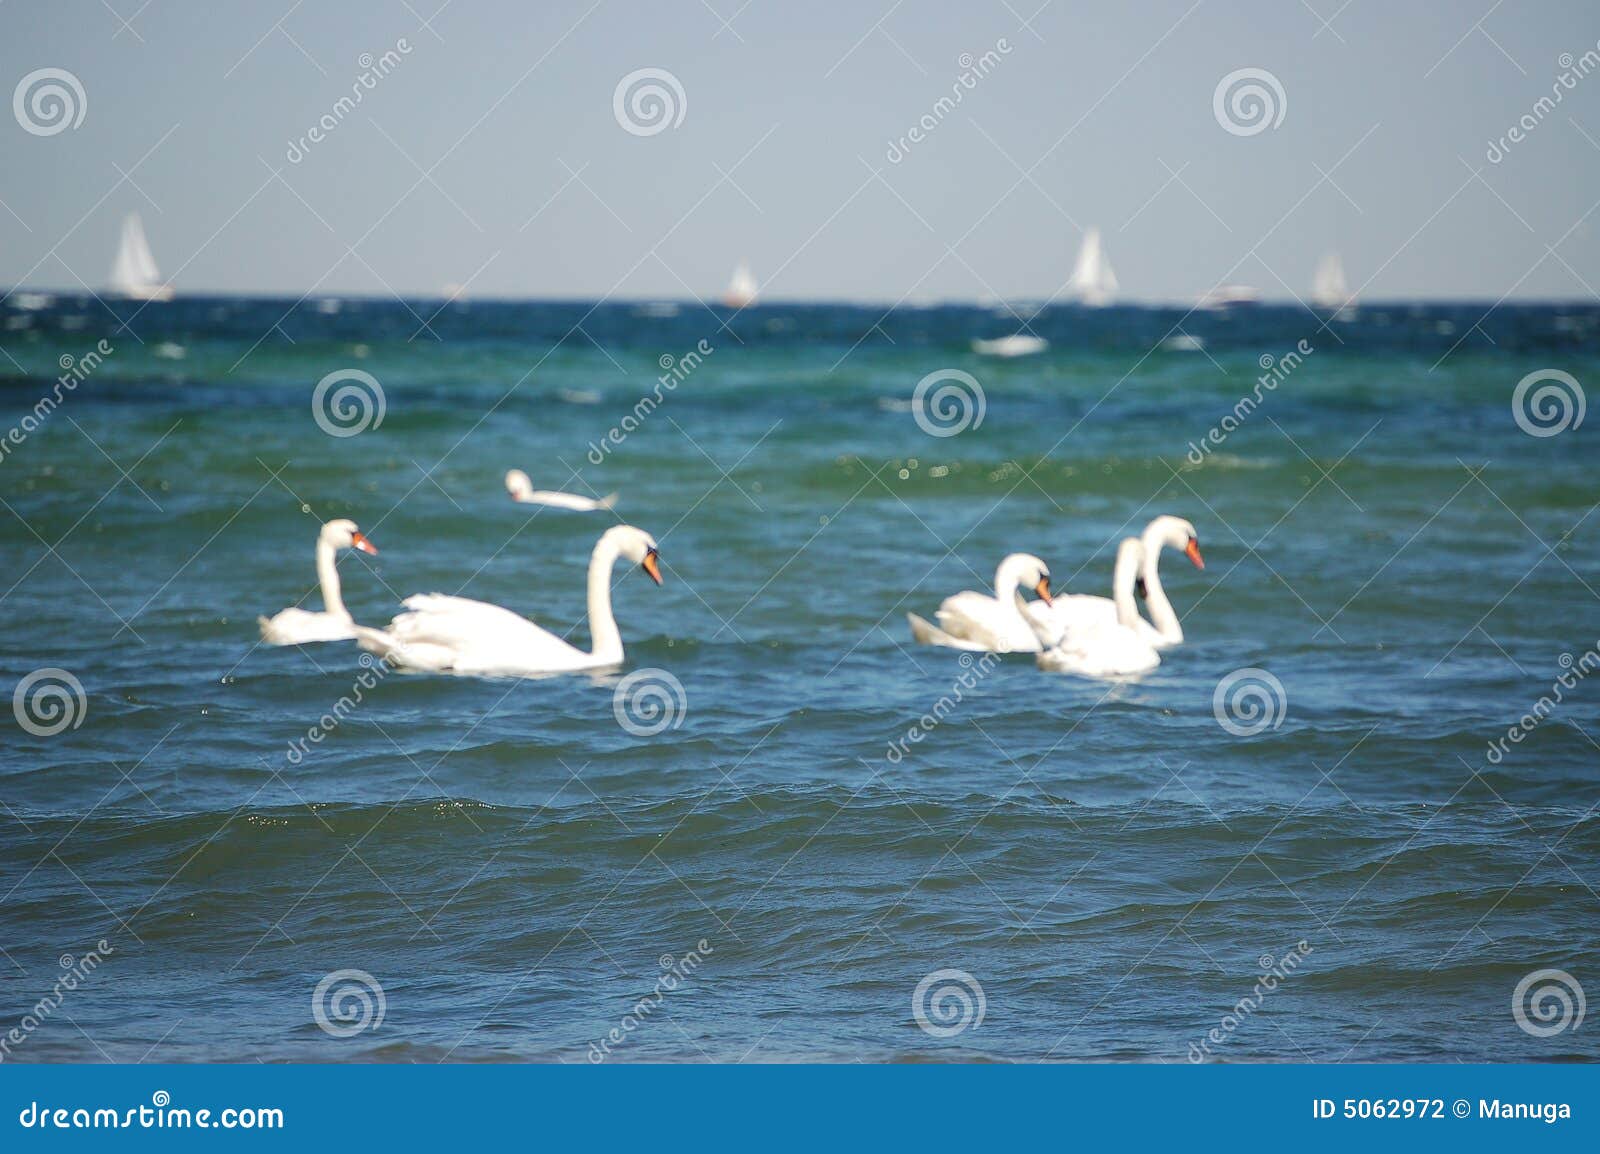 Swan oceanu. Zwierzę łodzi kolby oceanu wakacje na plaży charakteru rejsów morskiego podróży white łabędzie wody morza